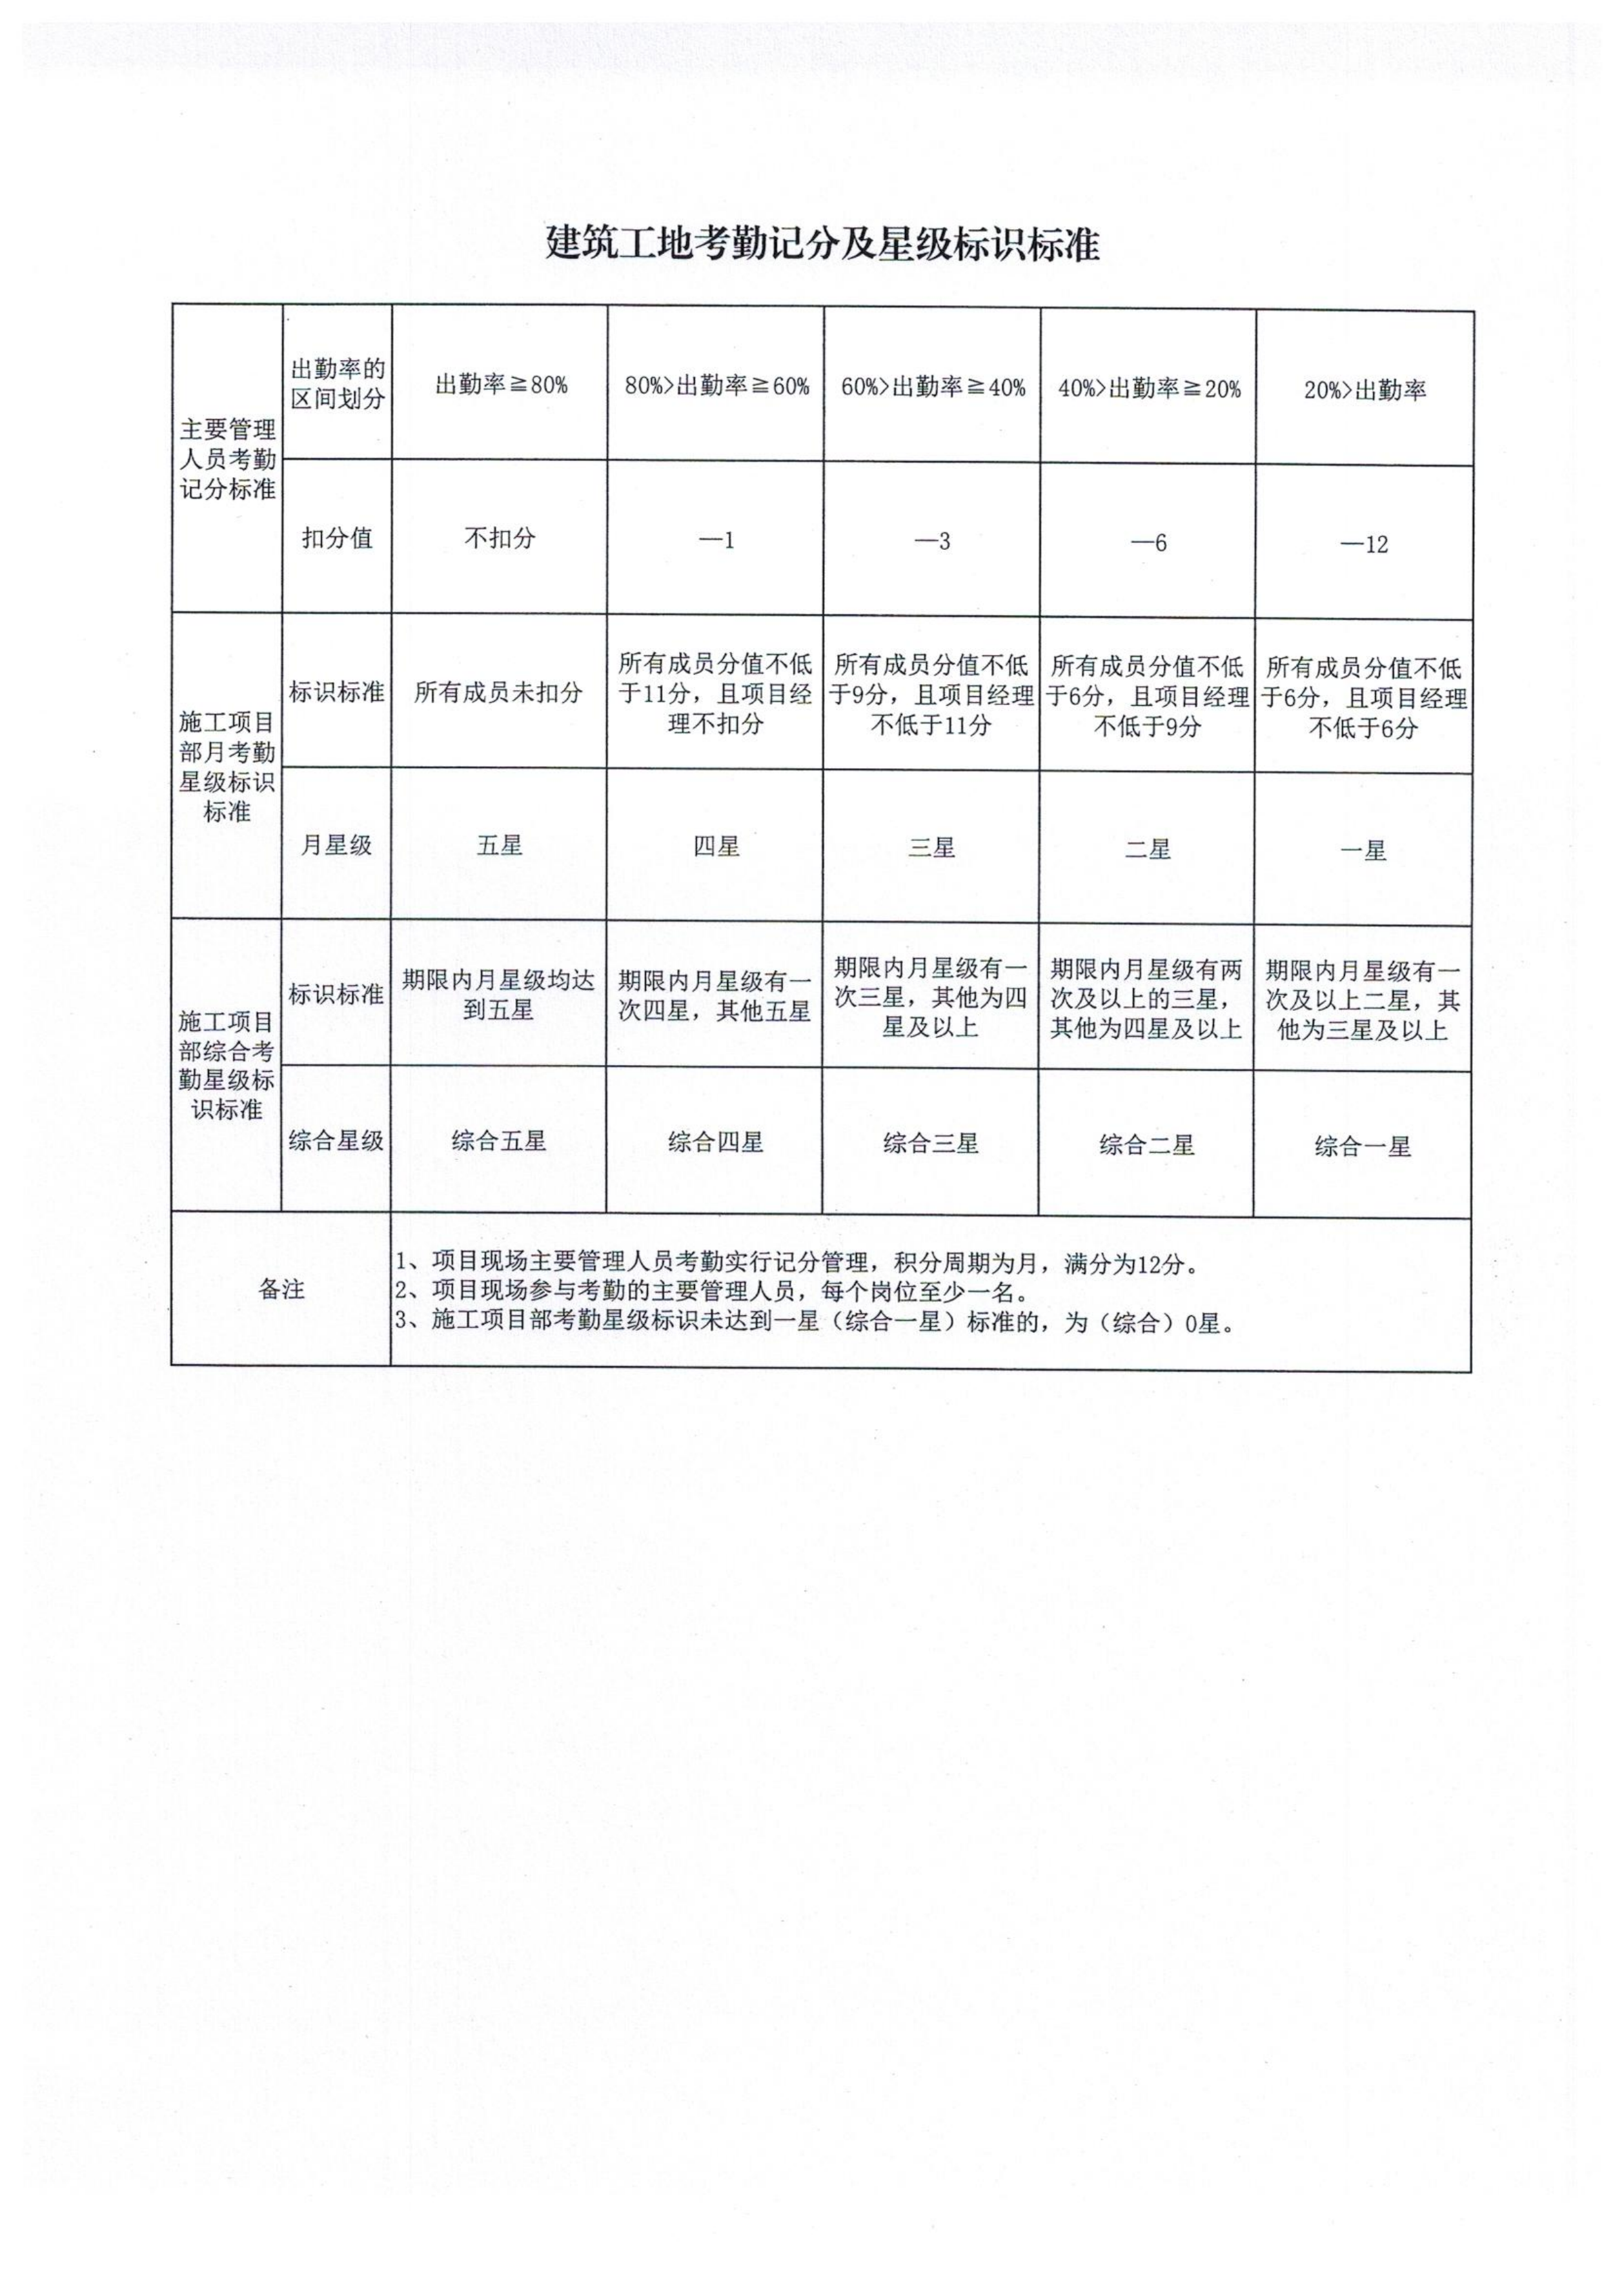 2020年南京市建筑工地现场主要管理人员考勤管理办法